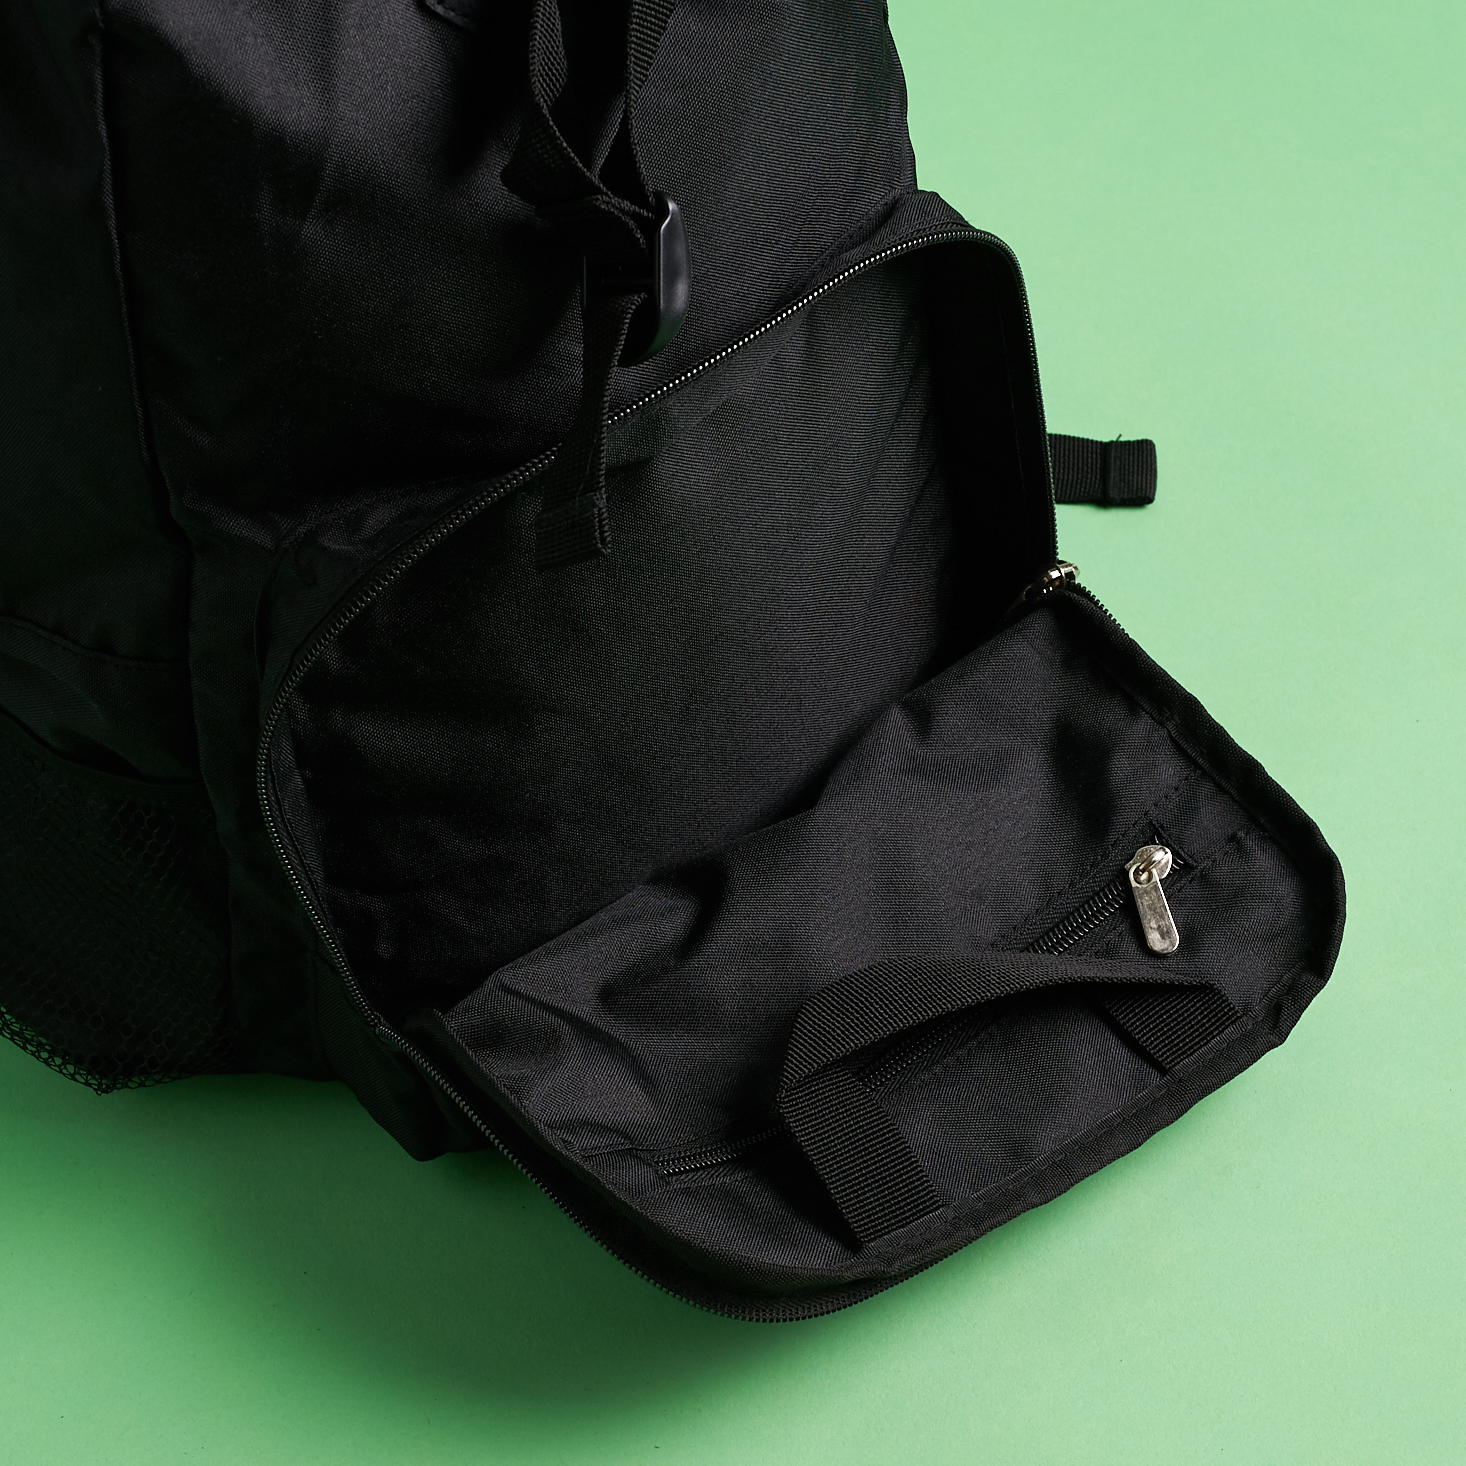 open front pocket of backpack